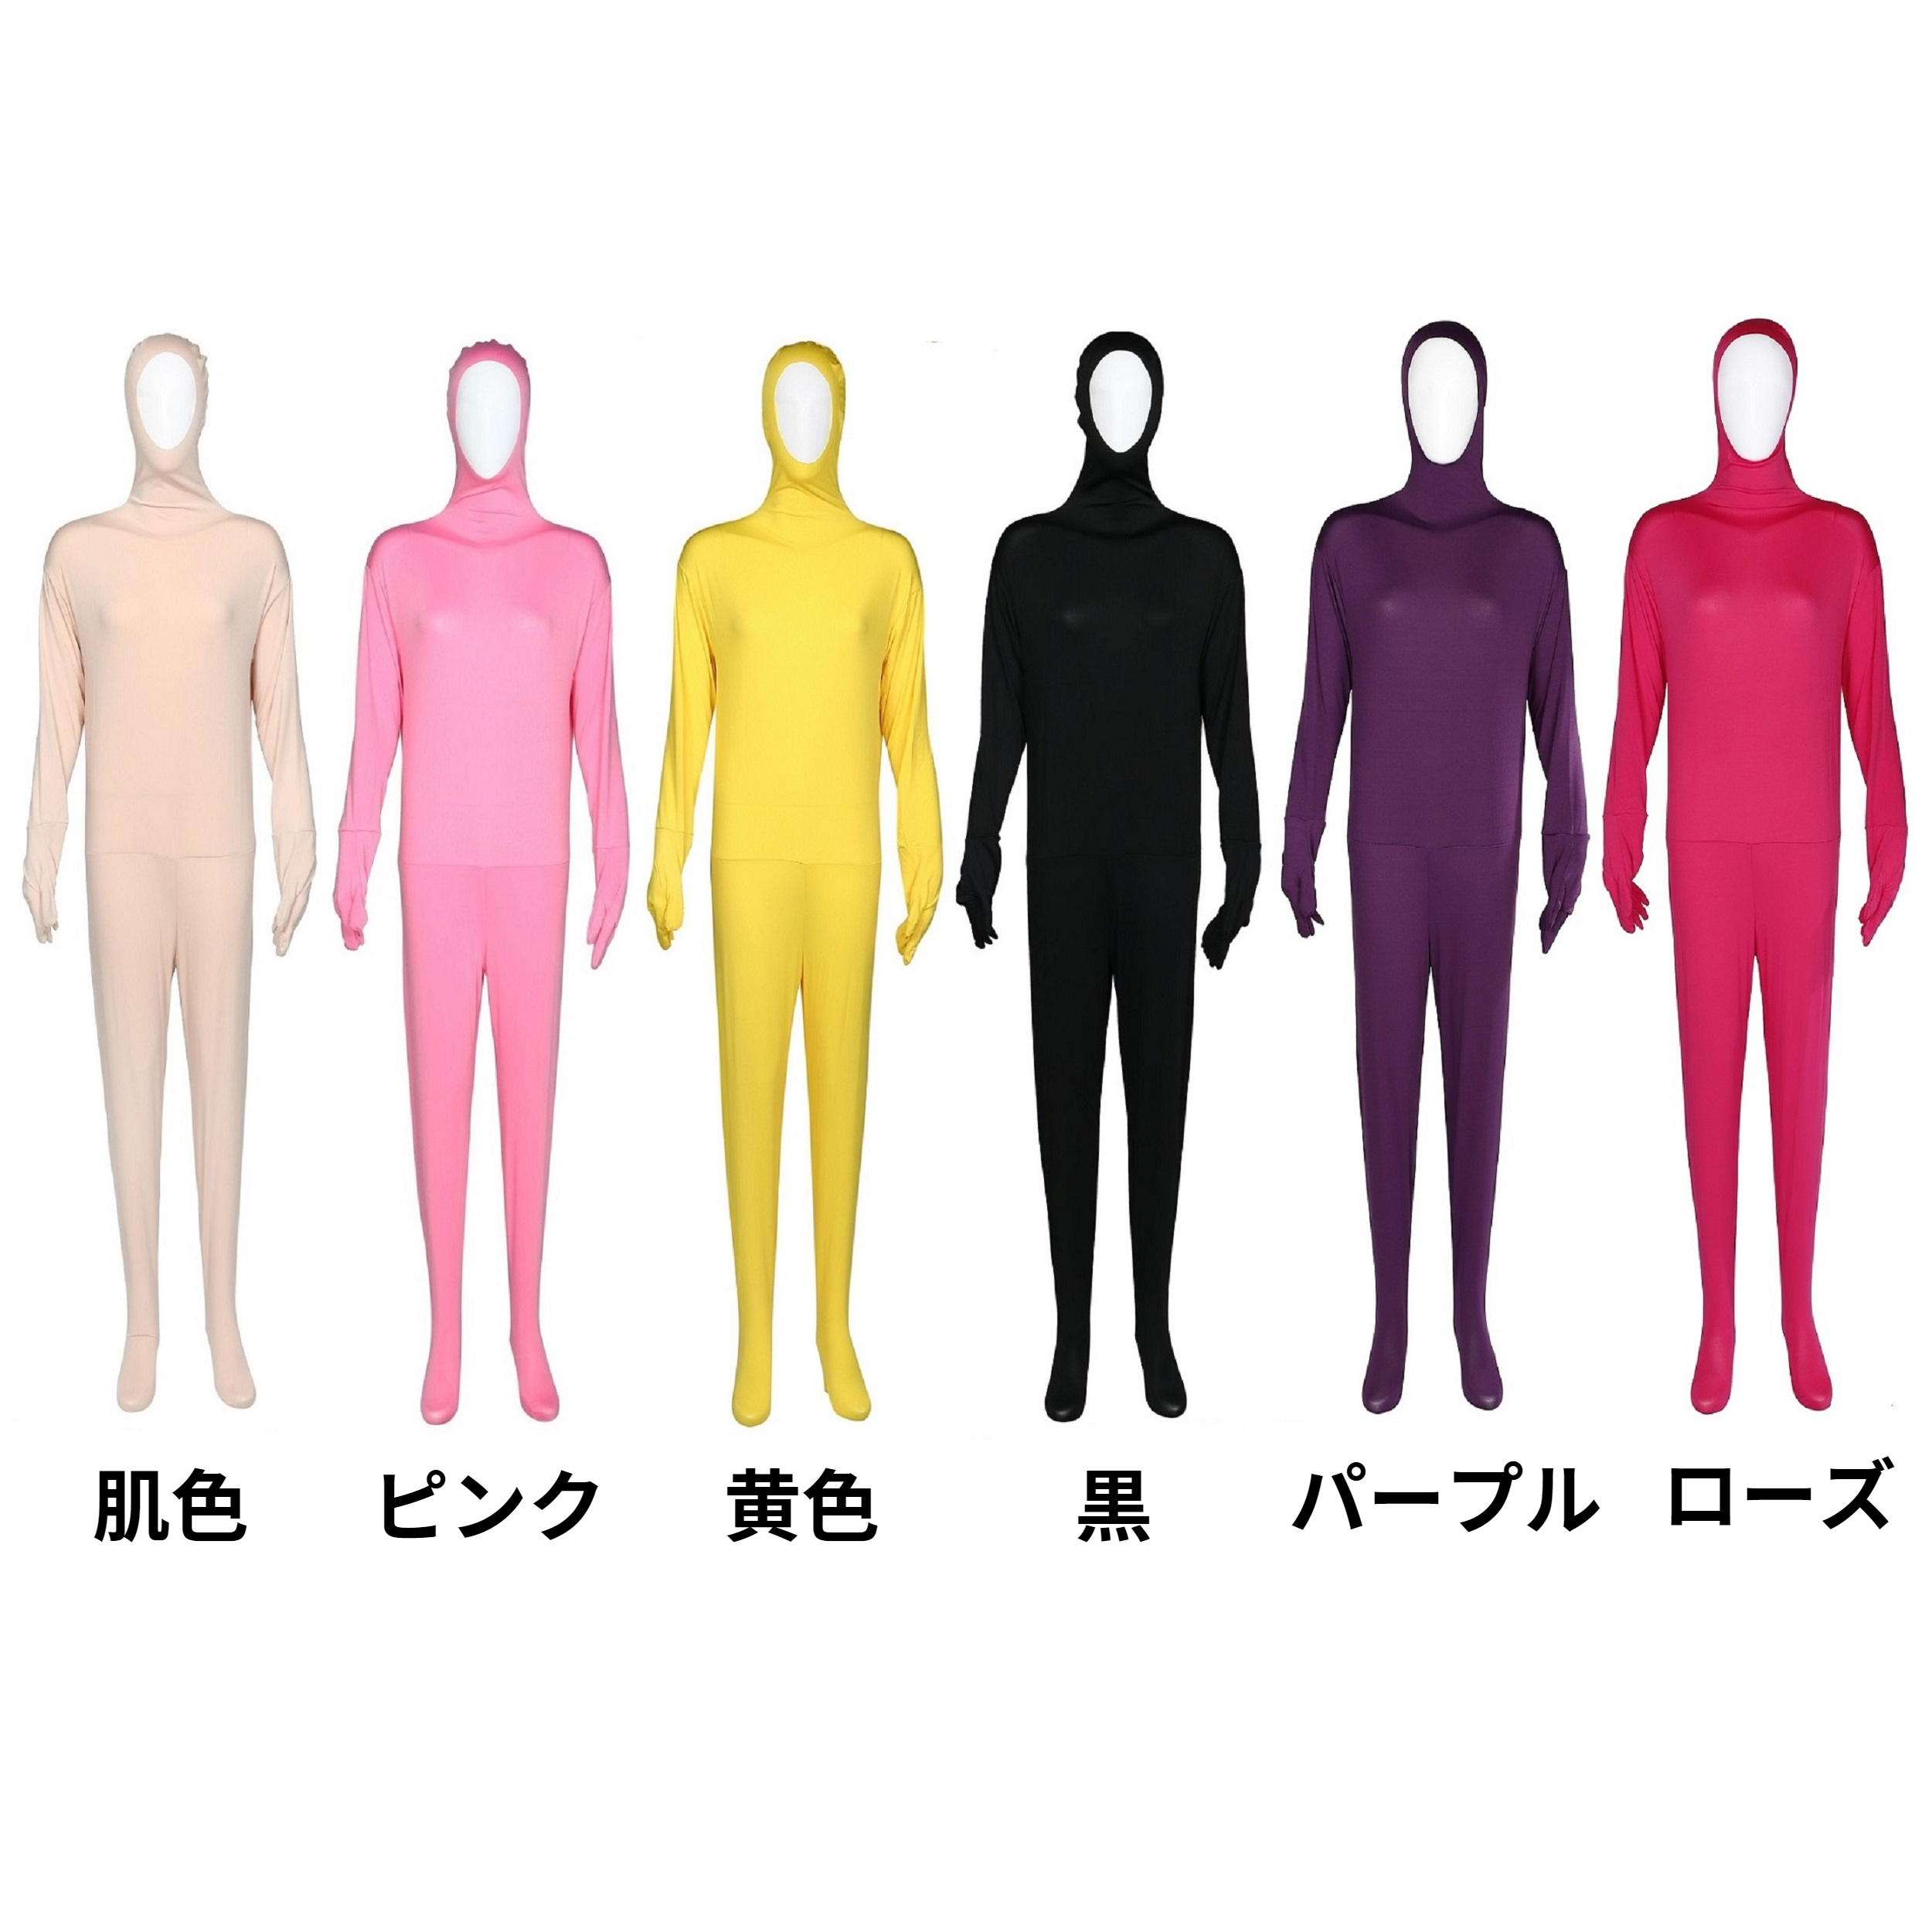 衣装(ピンク、水色、パープル、黄色、オレンジ)×3 オールタイツ×2 日本